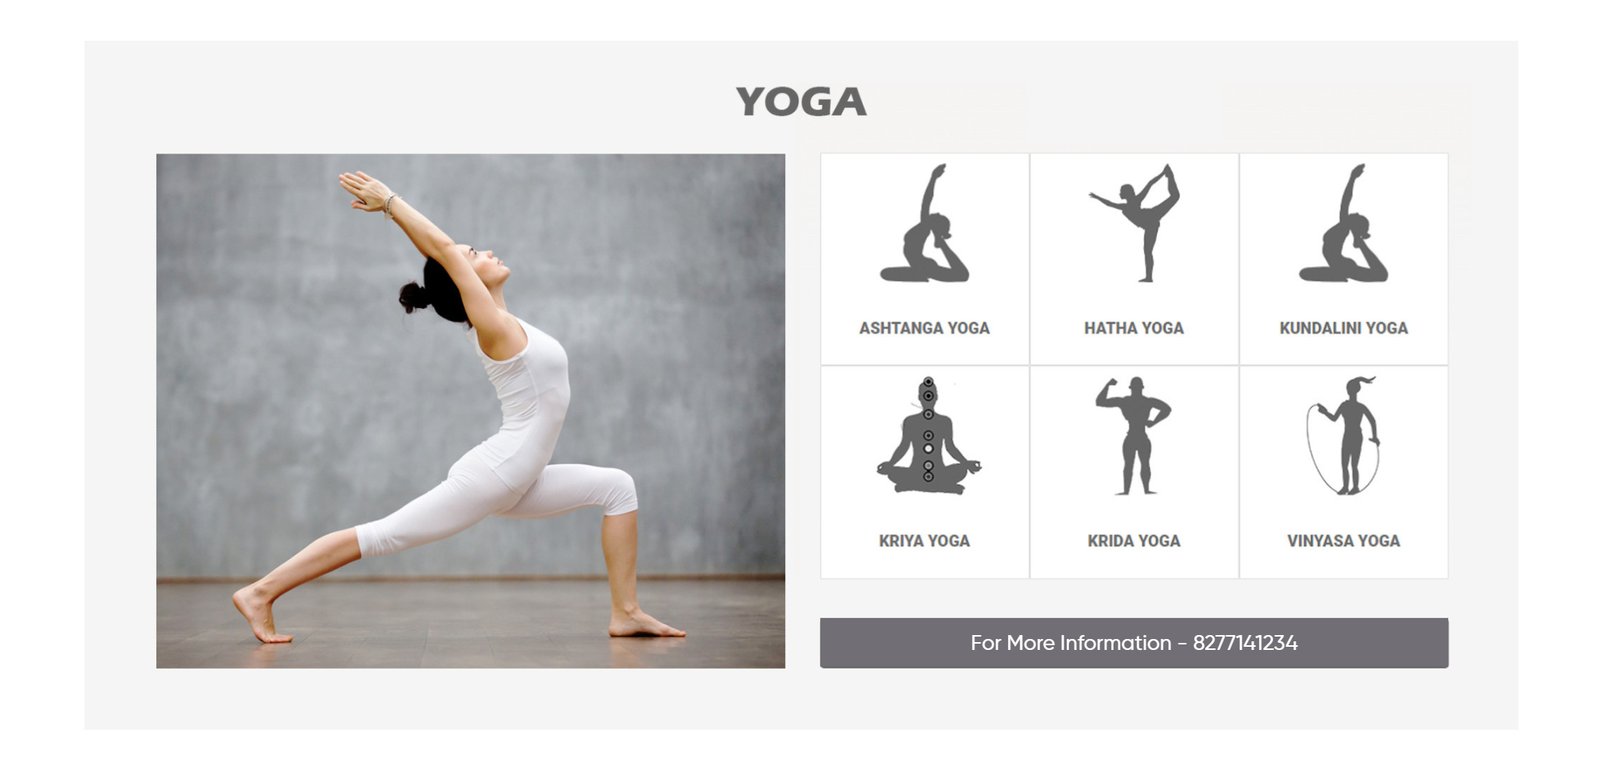 Ashtanga Yoga Second Series With Maria Villella | Maria Villella